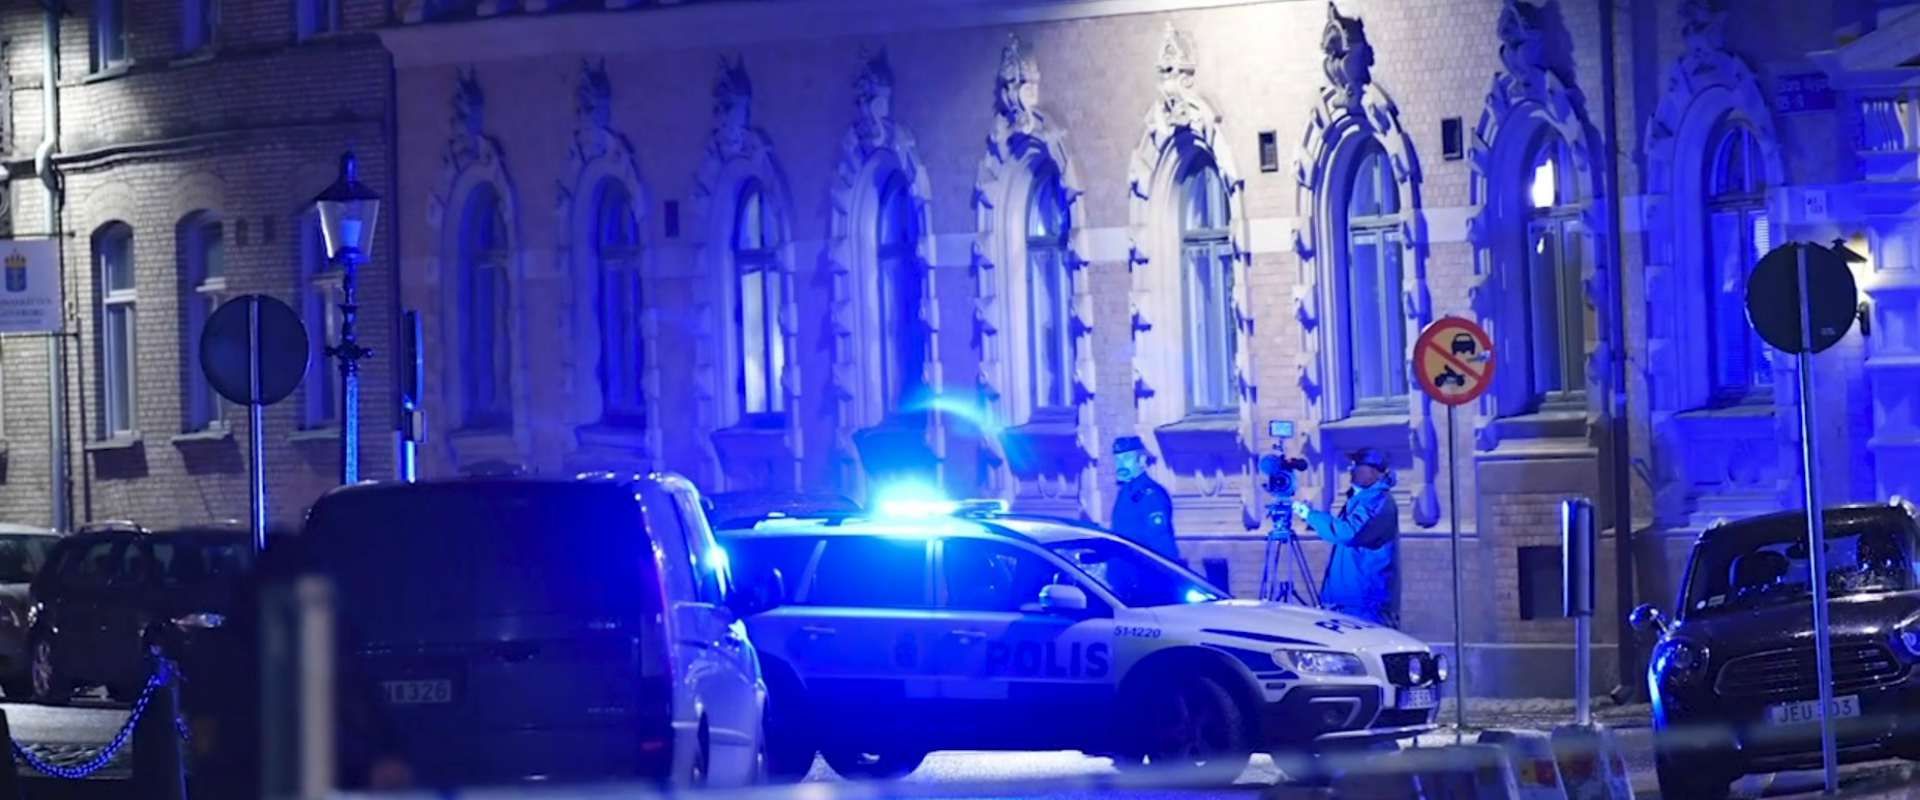 כוחות משטרה ליד בית הכנסת בגטבורג